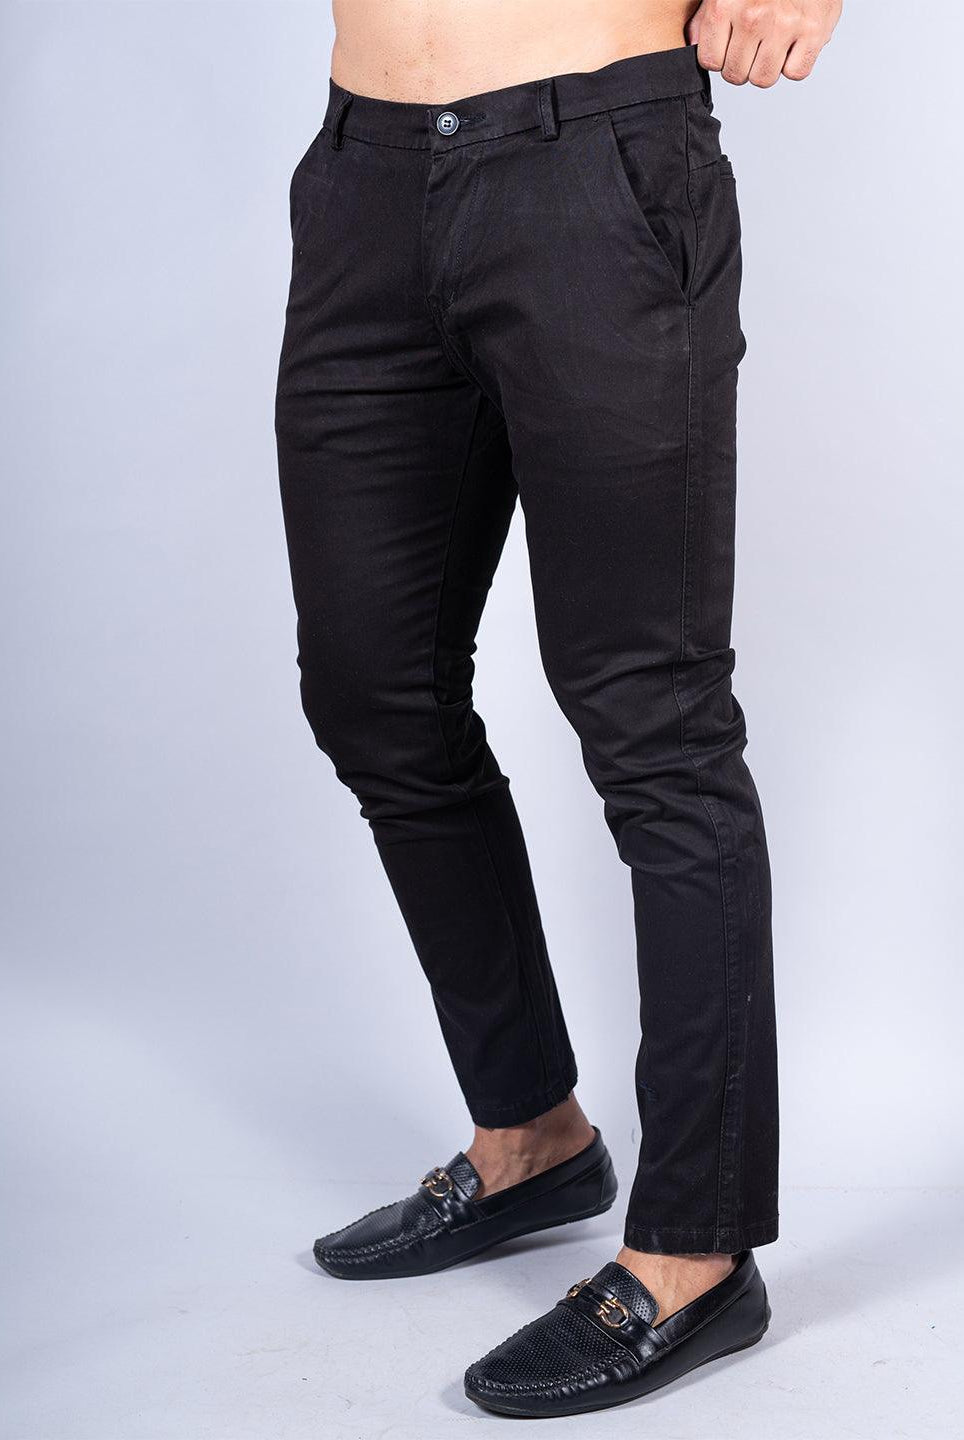 Black Color Ankle Length Fusion Cotton Pant - Tistabene